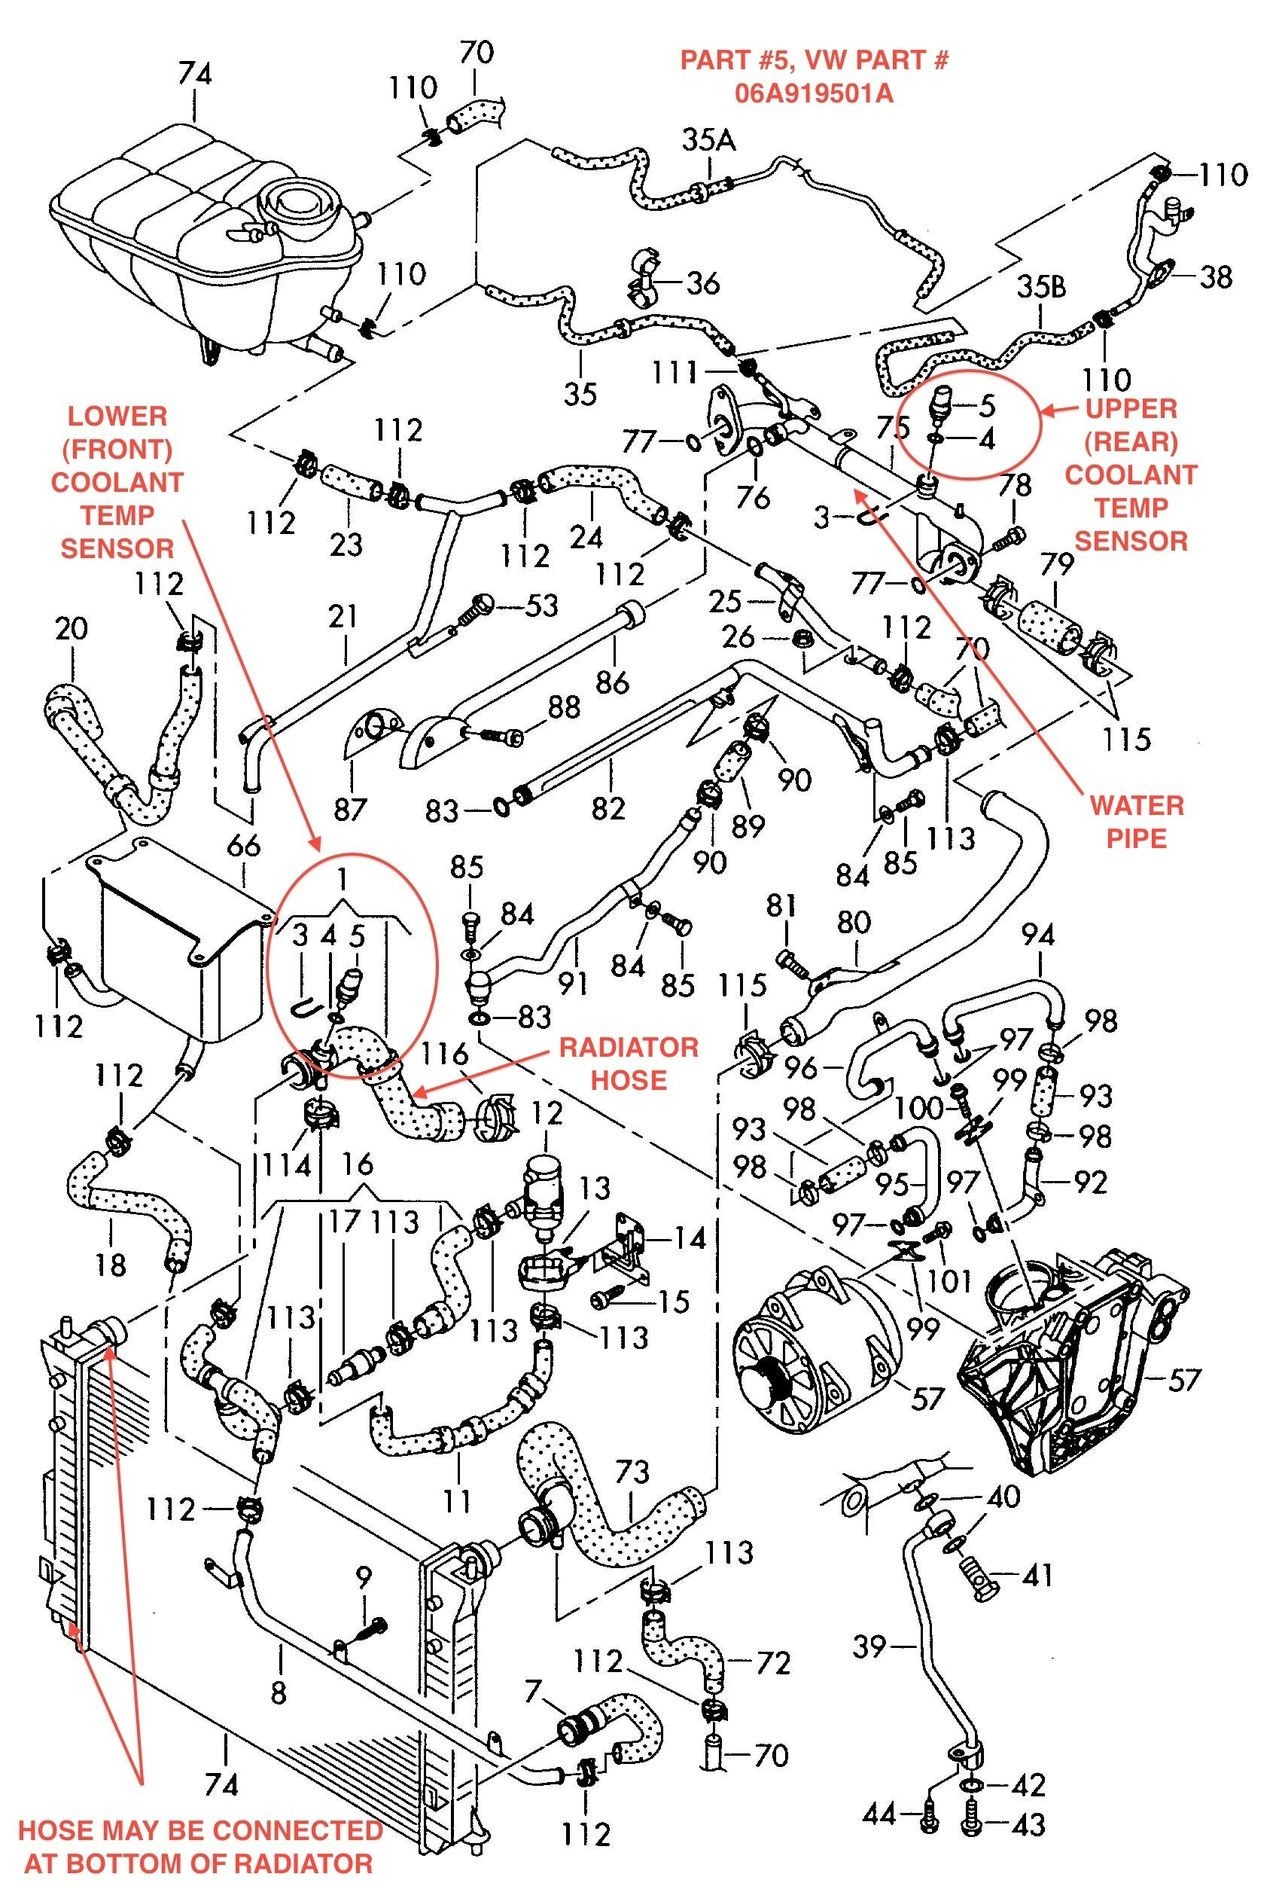 2006 Vw Passat Engine Diagram Volkswagen Timing Belt and Cover Volkswagen Circuit Diagrams Of 2006 Vw Passat Engine Diagram